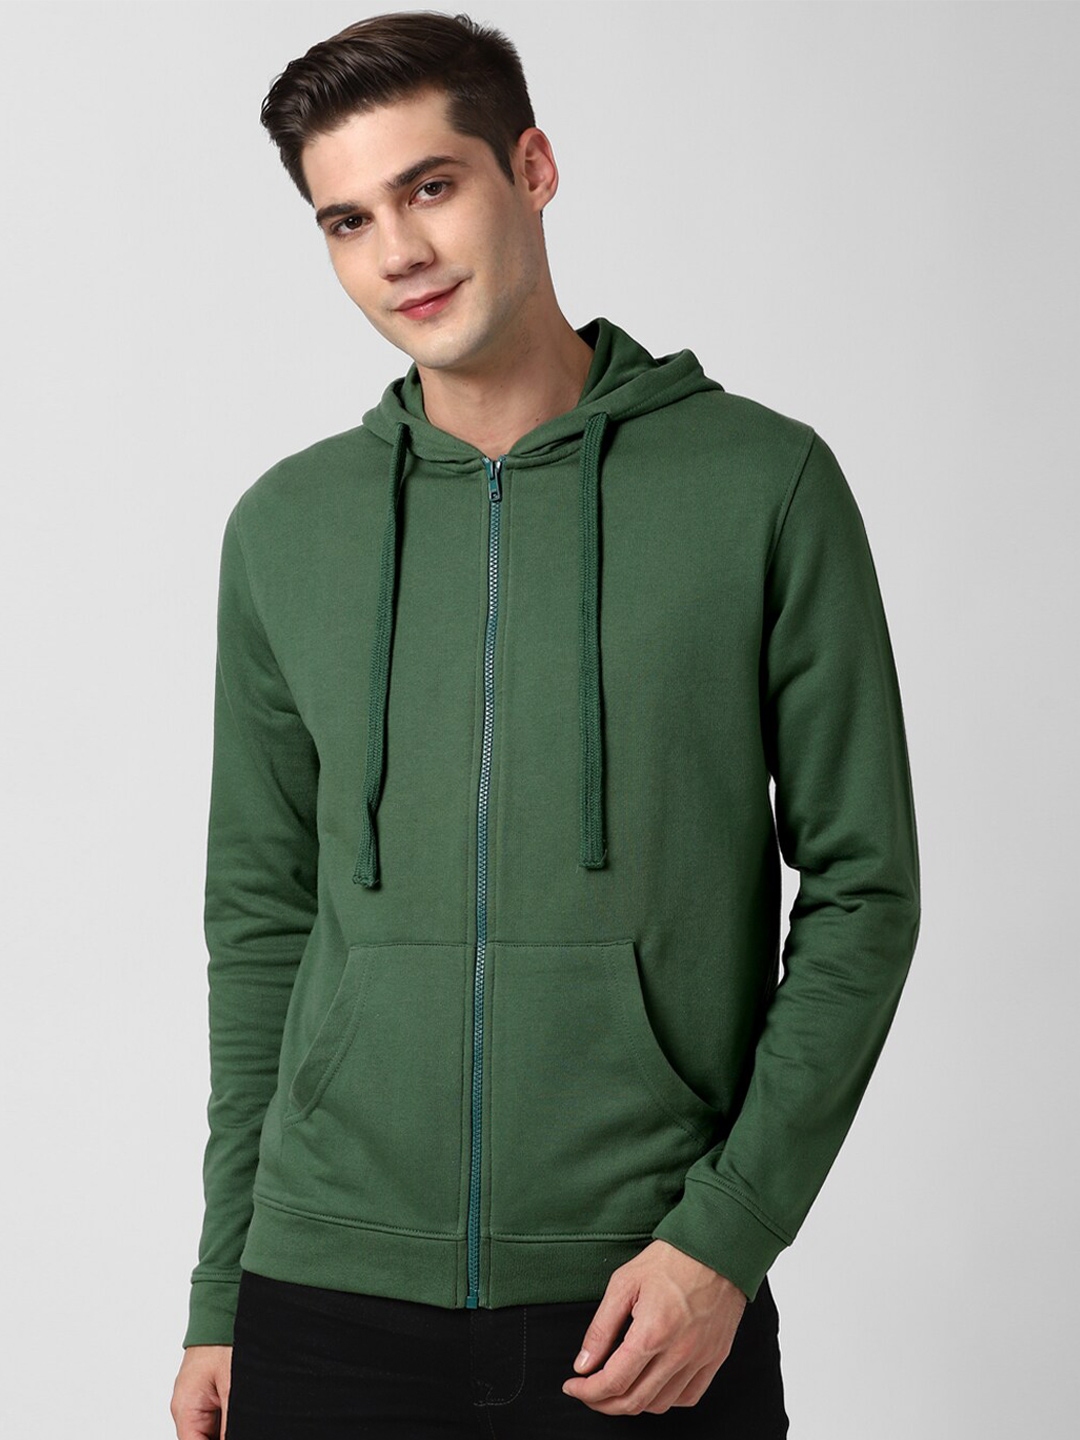 Buy Peter England Casuals Men Green Hooded Sweatshirt - Sweatshirts for ...